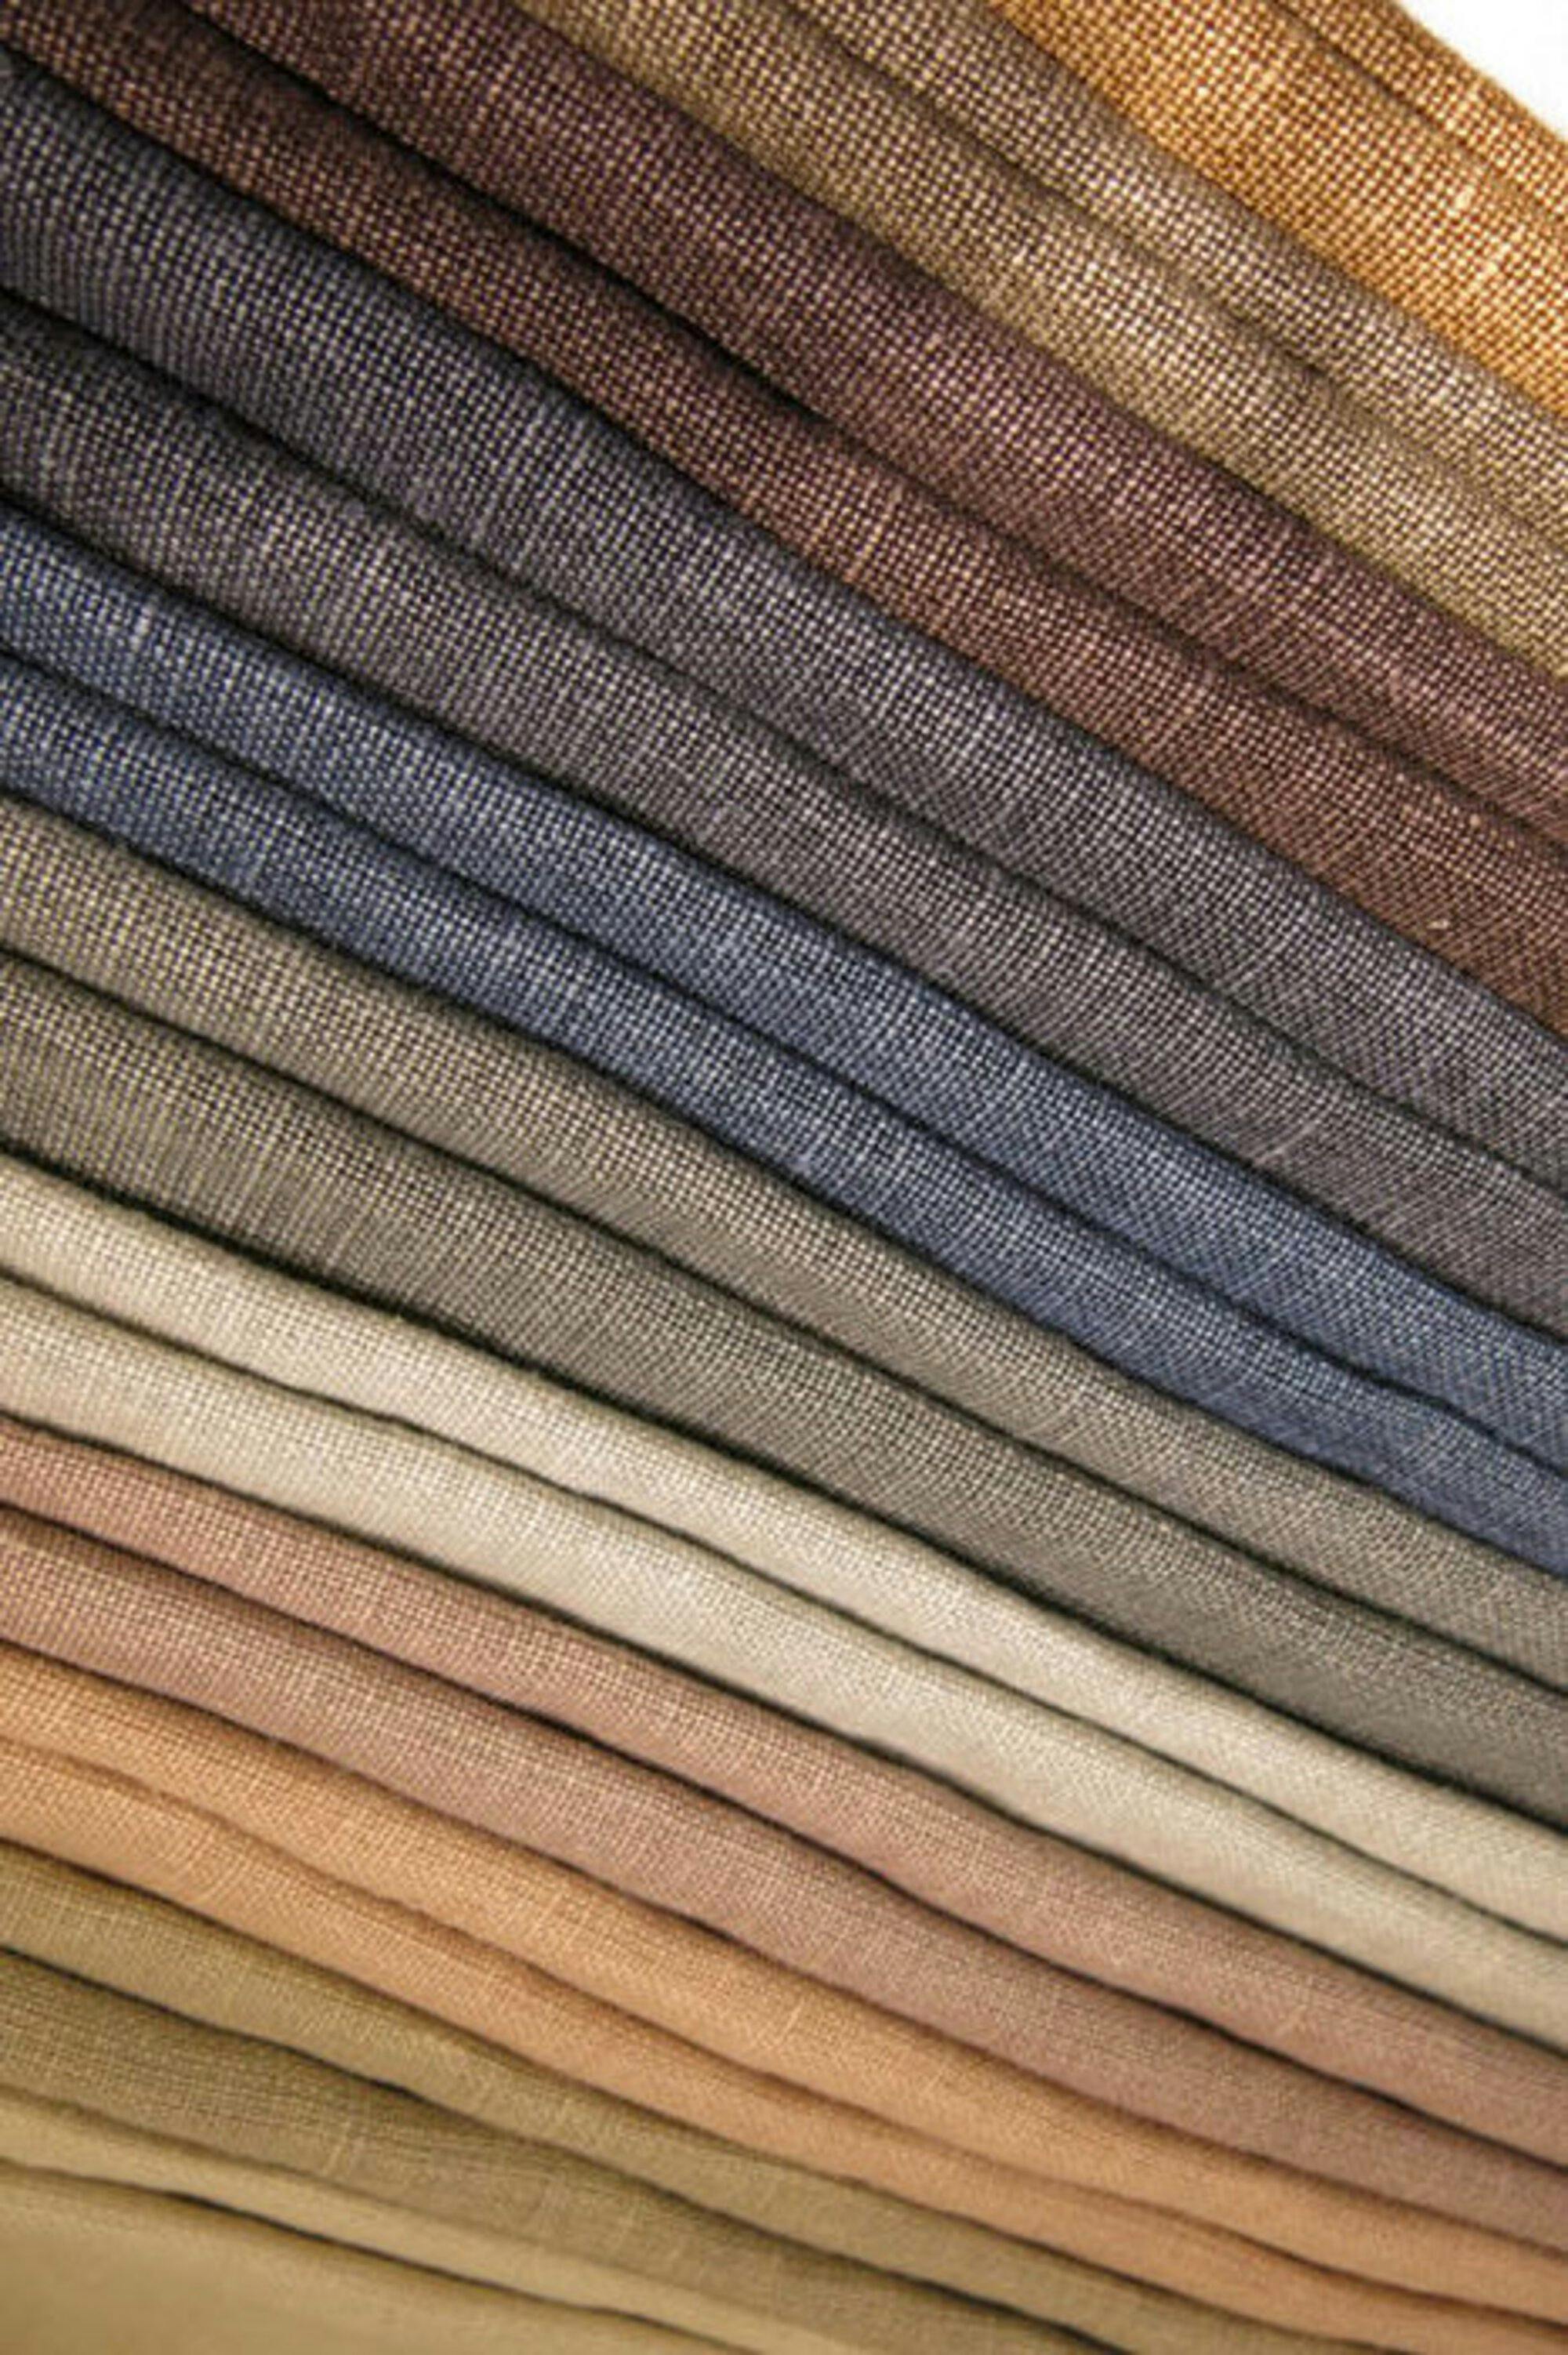 Ruff Linen curtain fabric